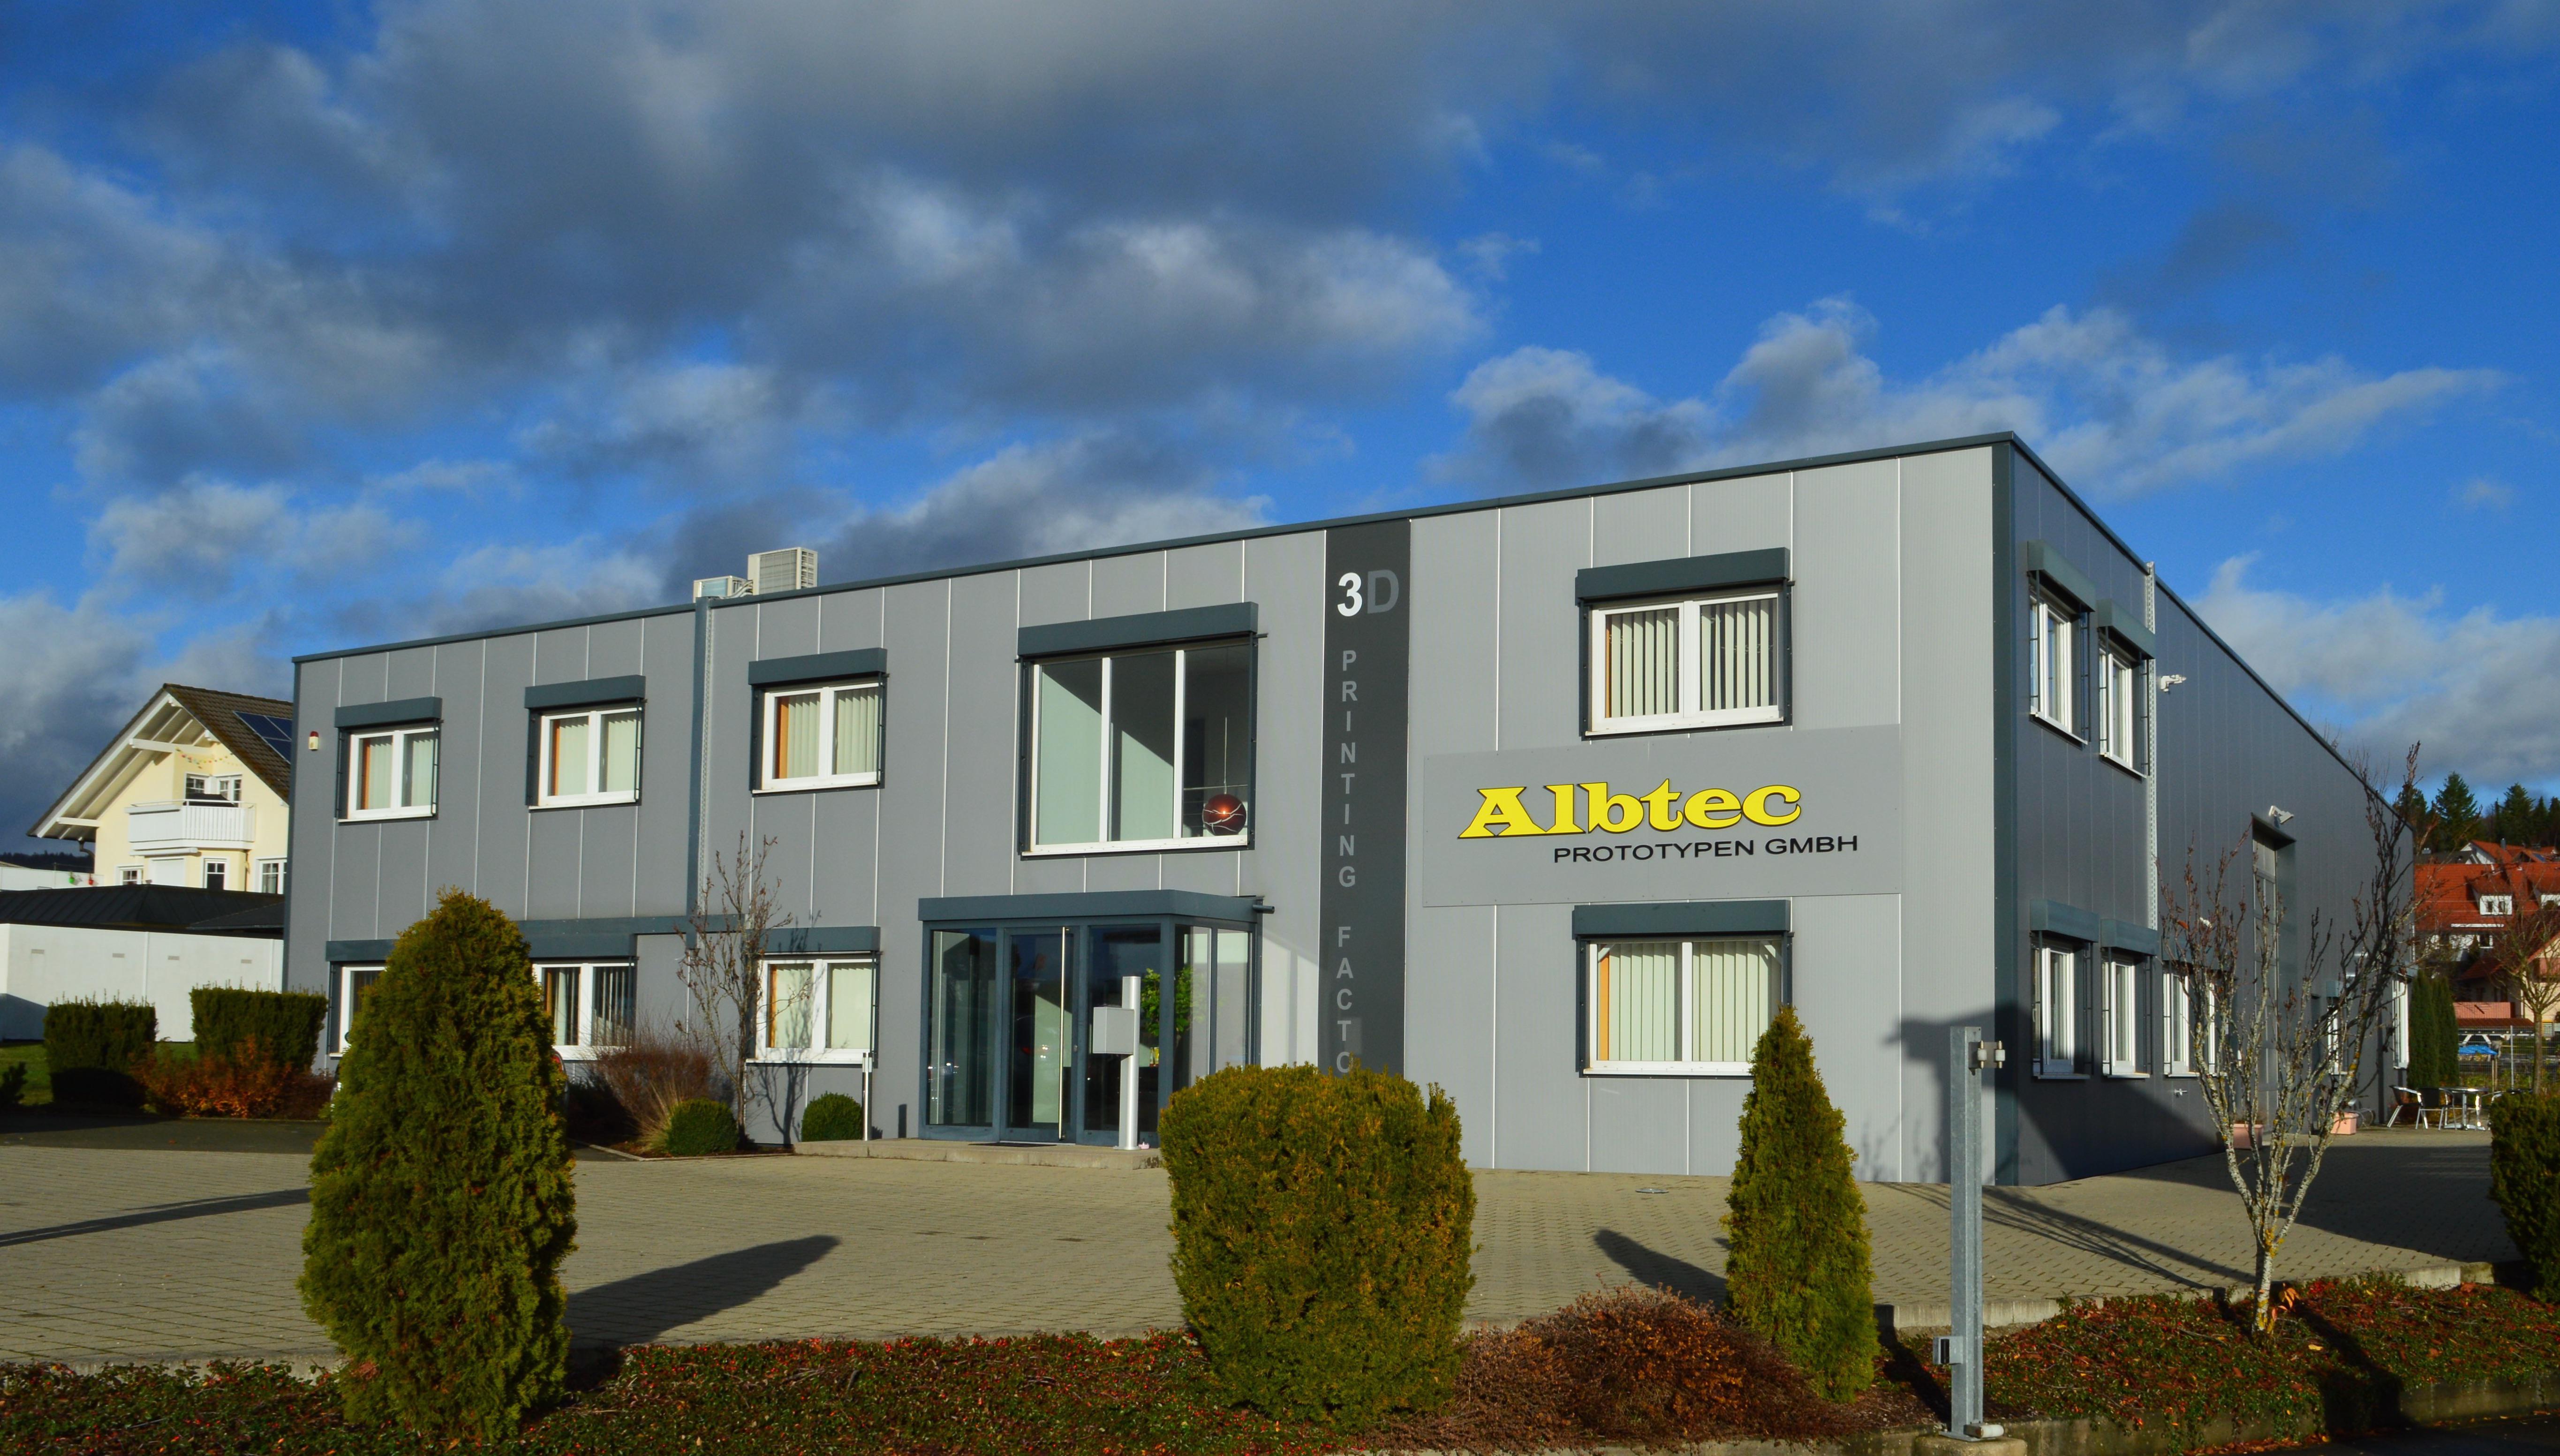 ALBTEC Prototypen GmbH, Kleineschle 18 in Burladingen